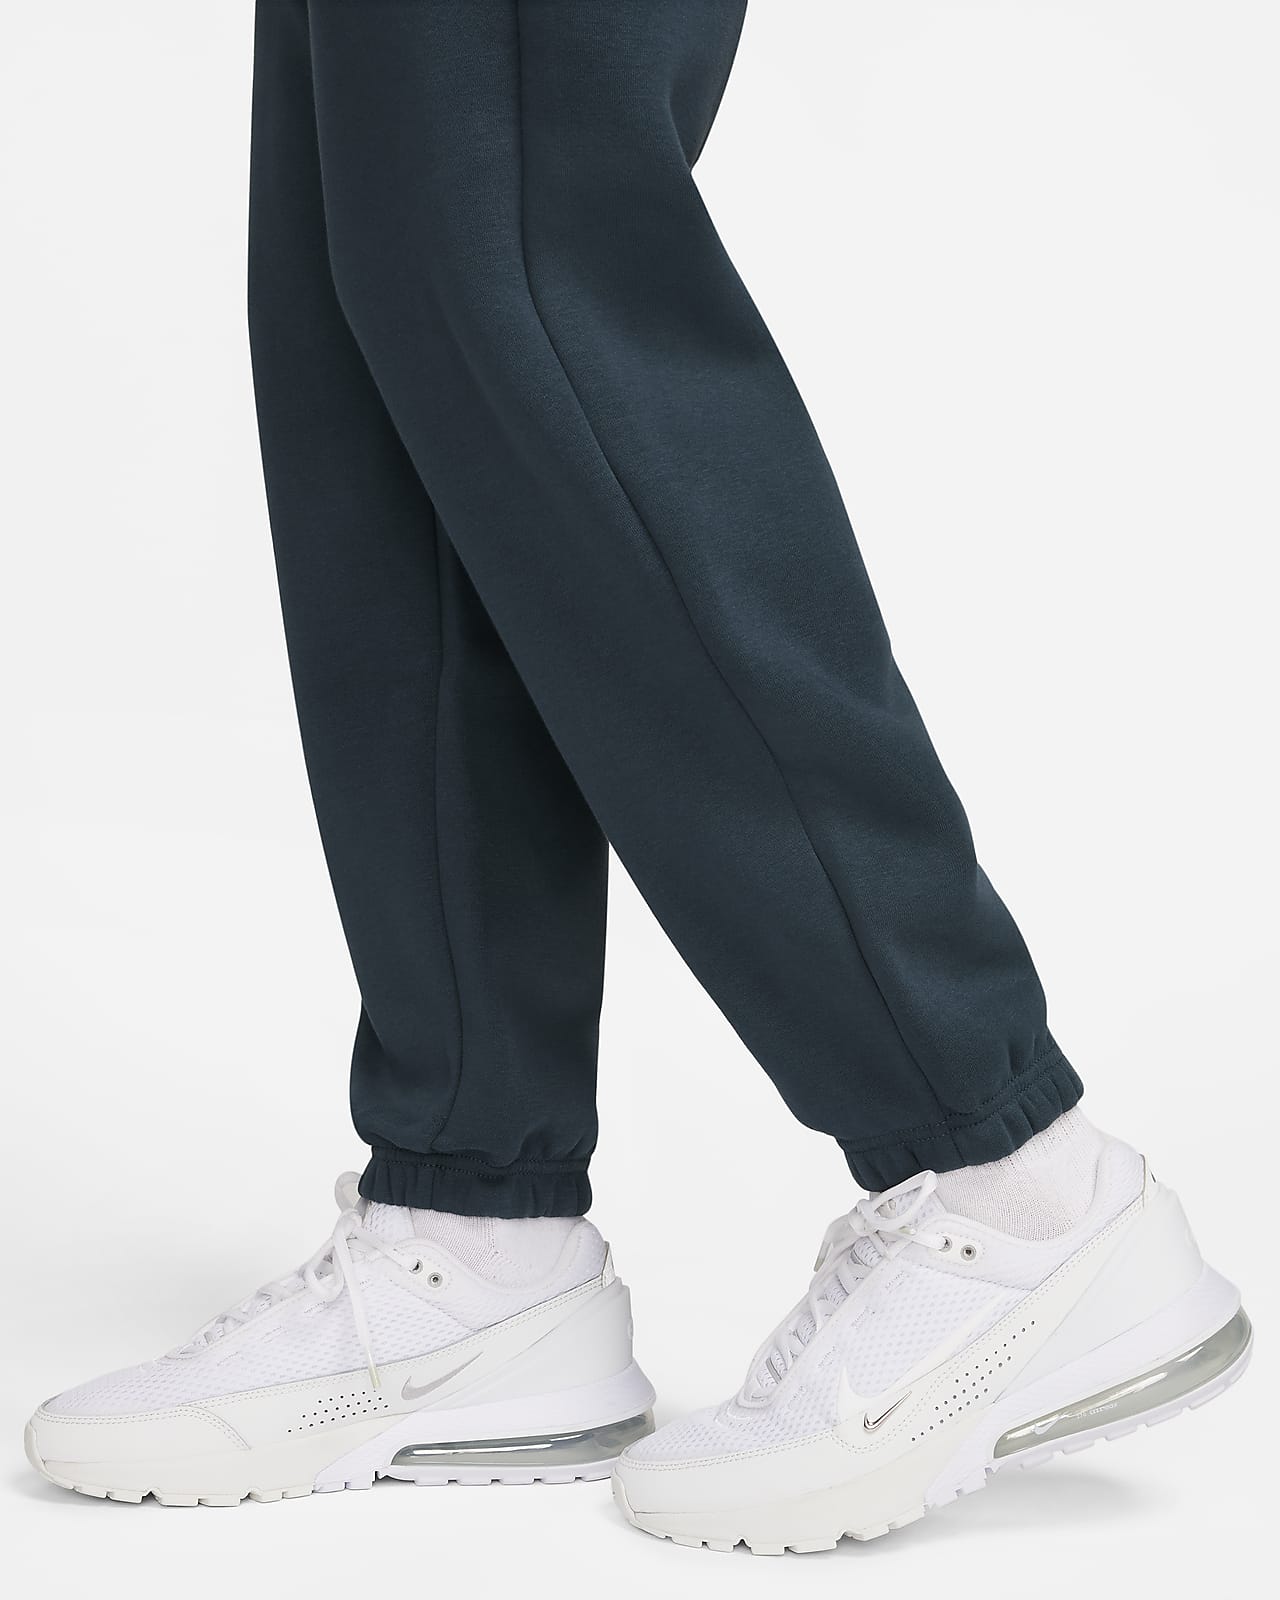 Nike Women's Sportswear Style Fleece High Rise Oversized Pants